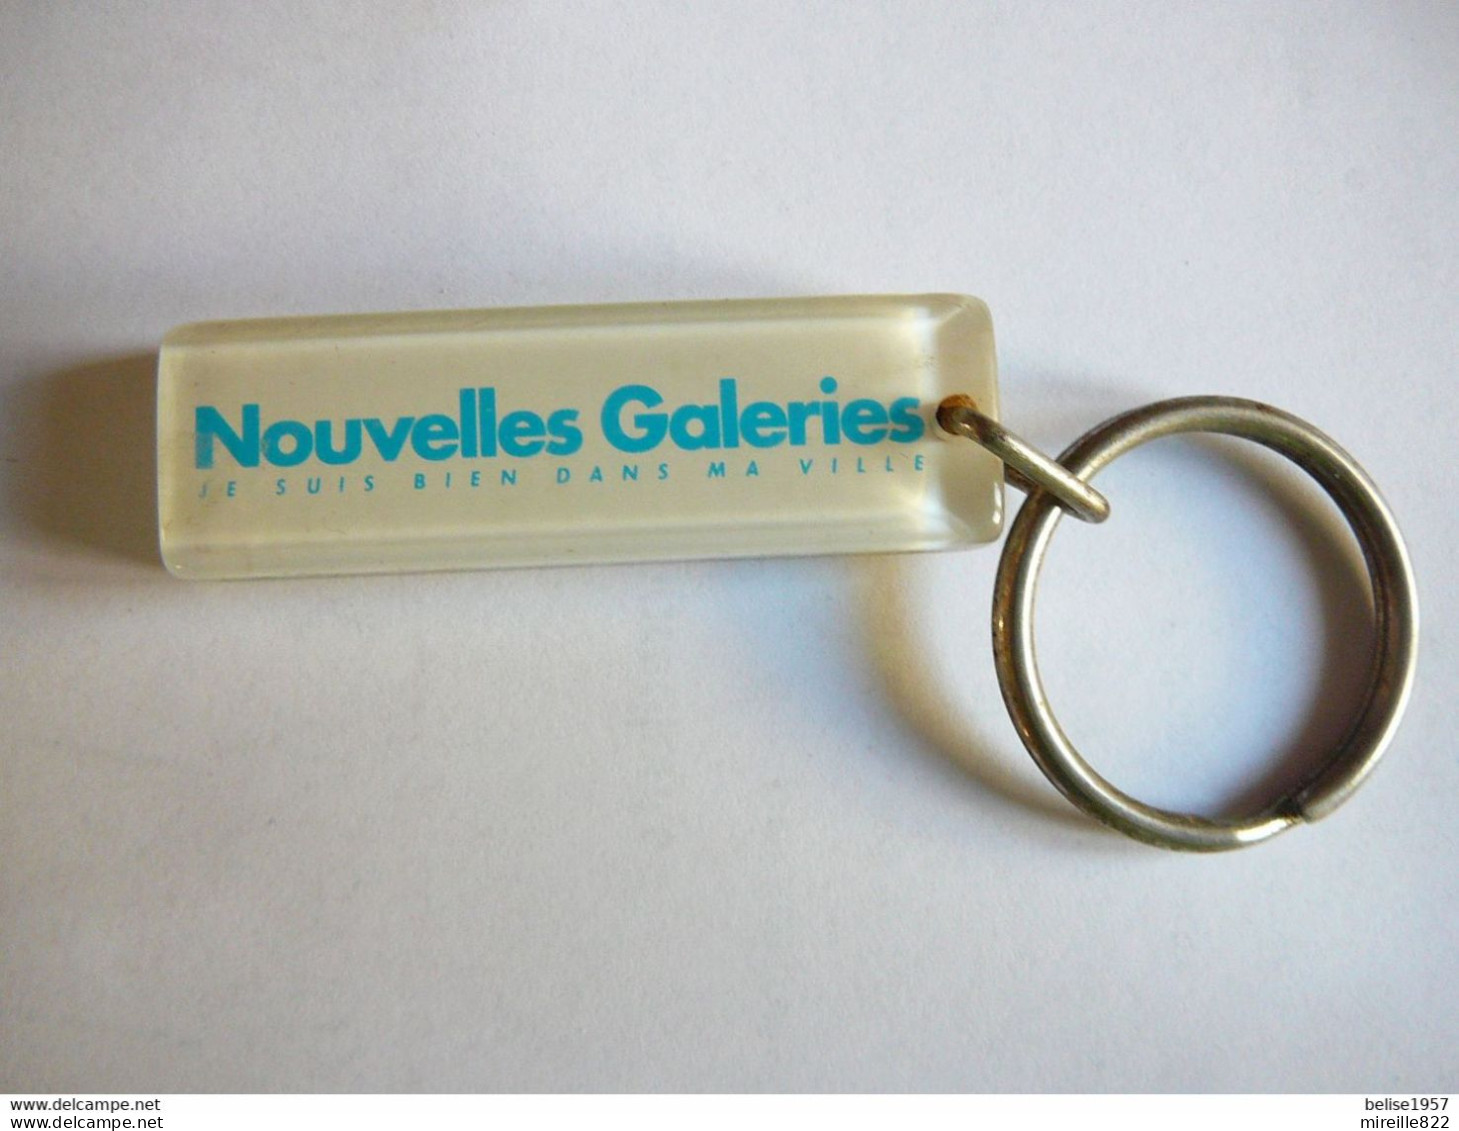 Bourbon - Nouvelle Galeries - Key-rings